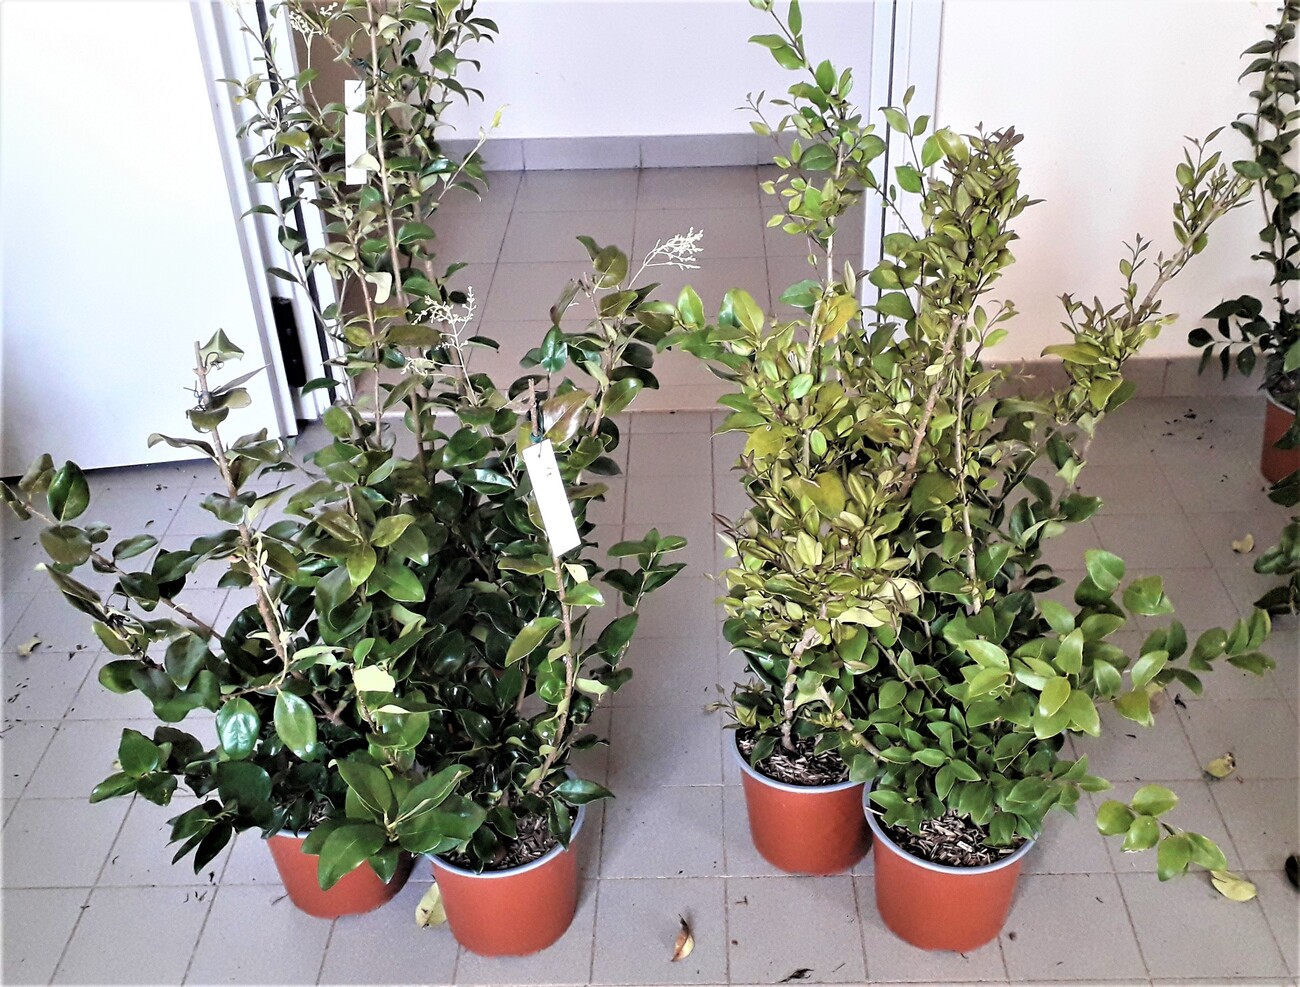 Sostegno per piante in bambù - URBAN VEGETABLE - Jardins de Babylone -  traliccio / per zone urbane / per piante aromatiche